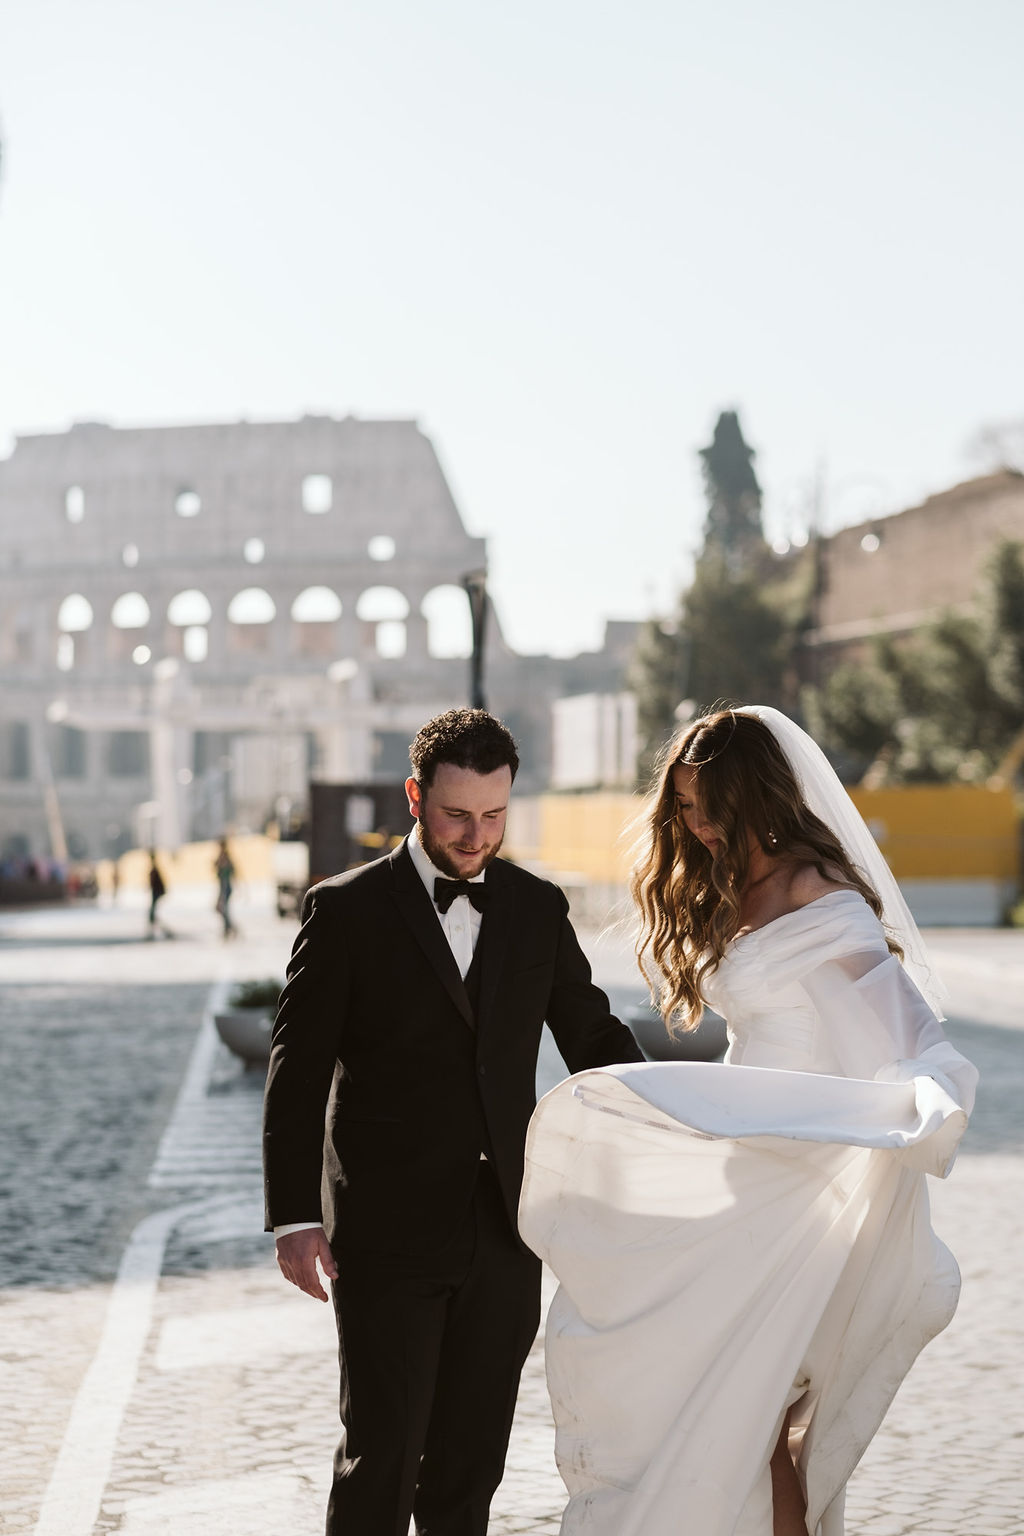 Italian bride twirling in wedding dress